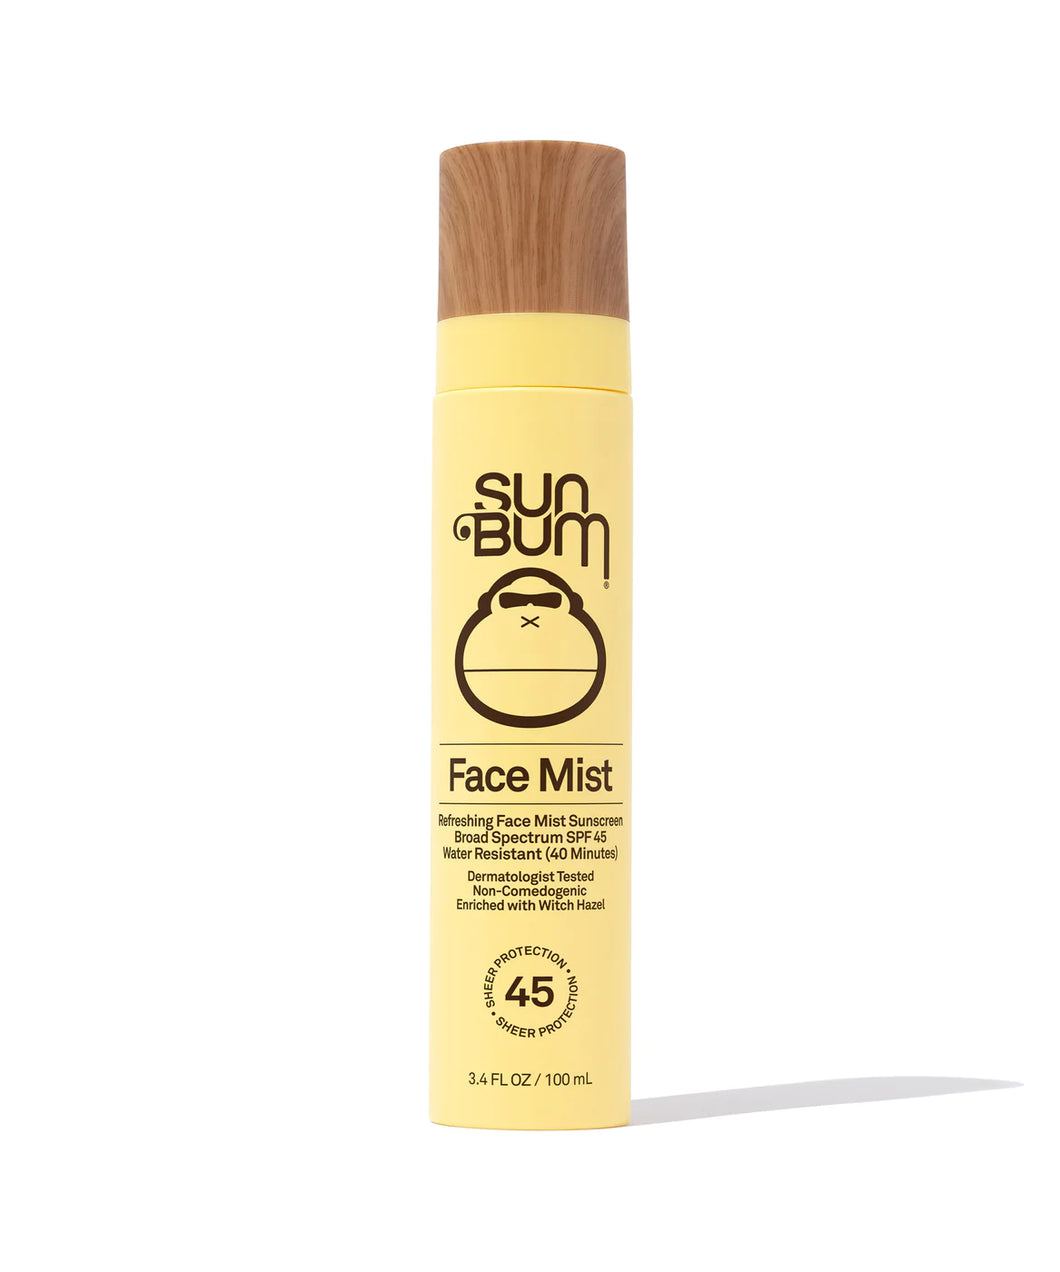 Sun Bum: Original SPF 45 Sunscreen Face Mist